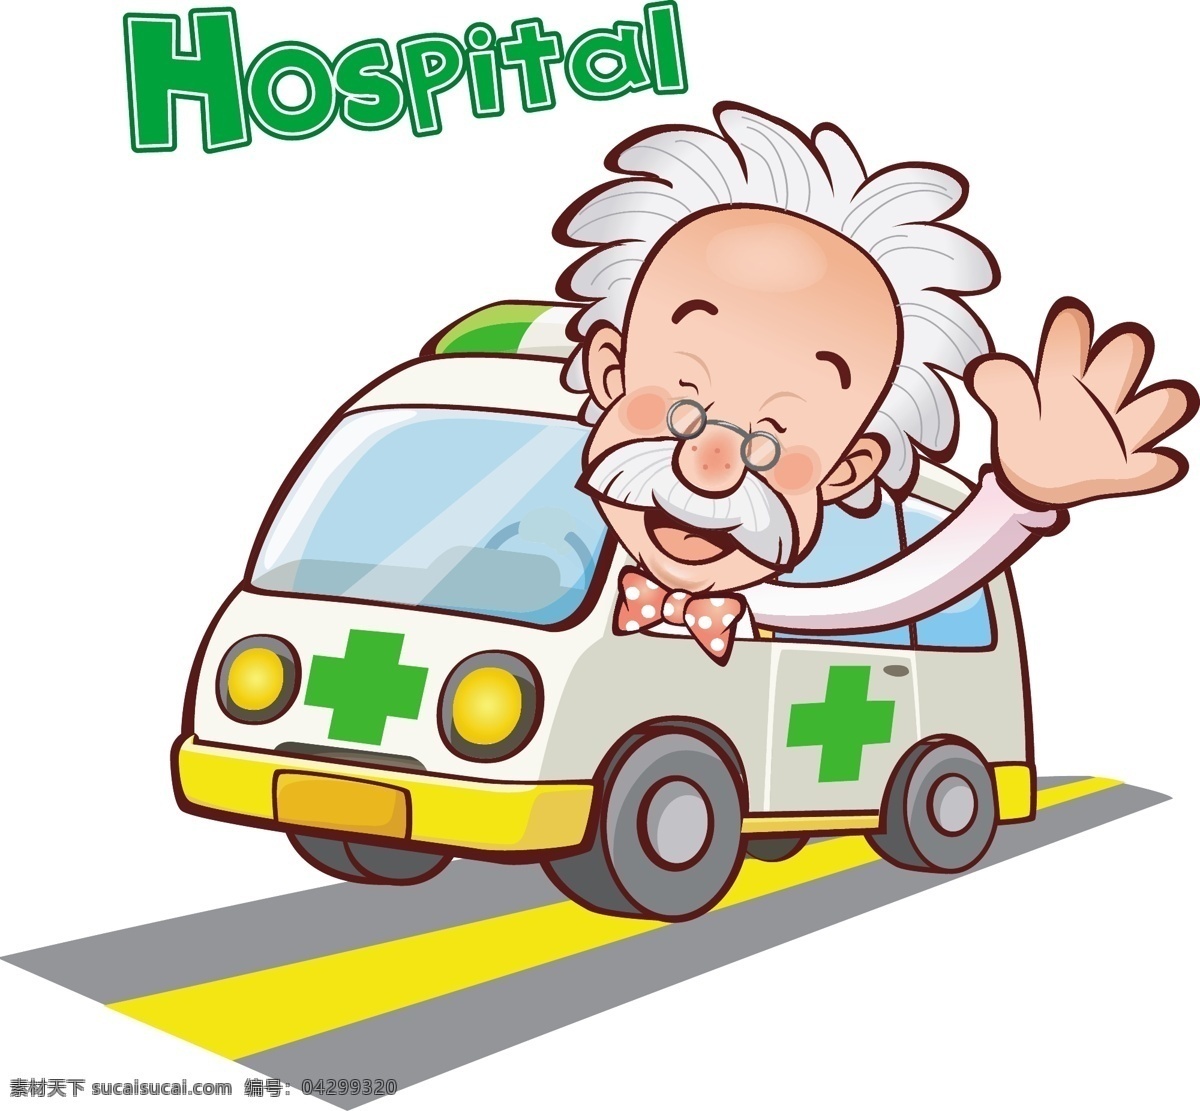 医生 医院 卡通 动漫 插画 动漫动画 动漫人物 和谐 救护车 十字标志 医护人员 友善 可爱